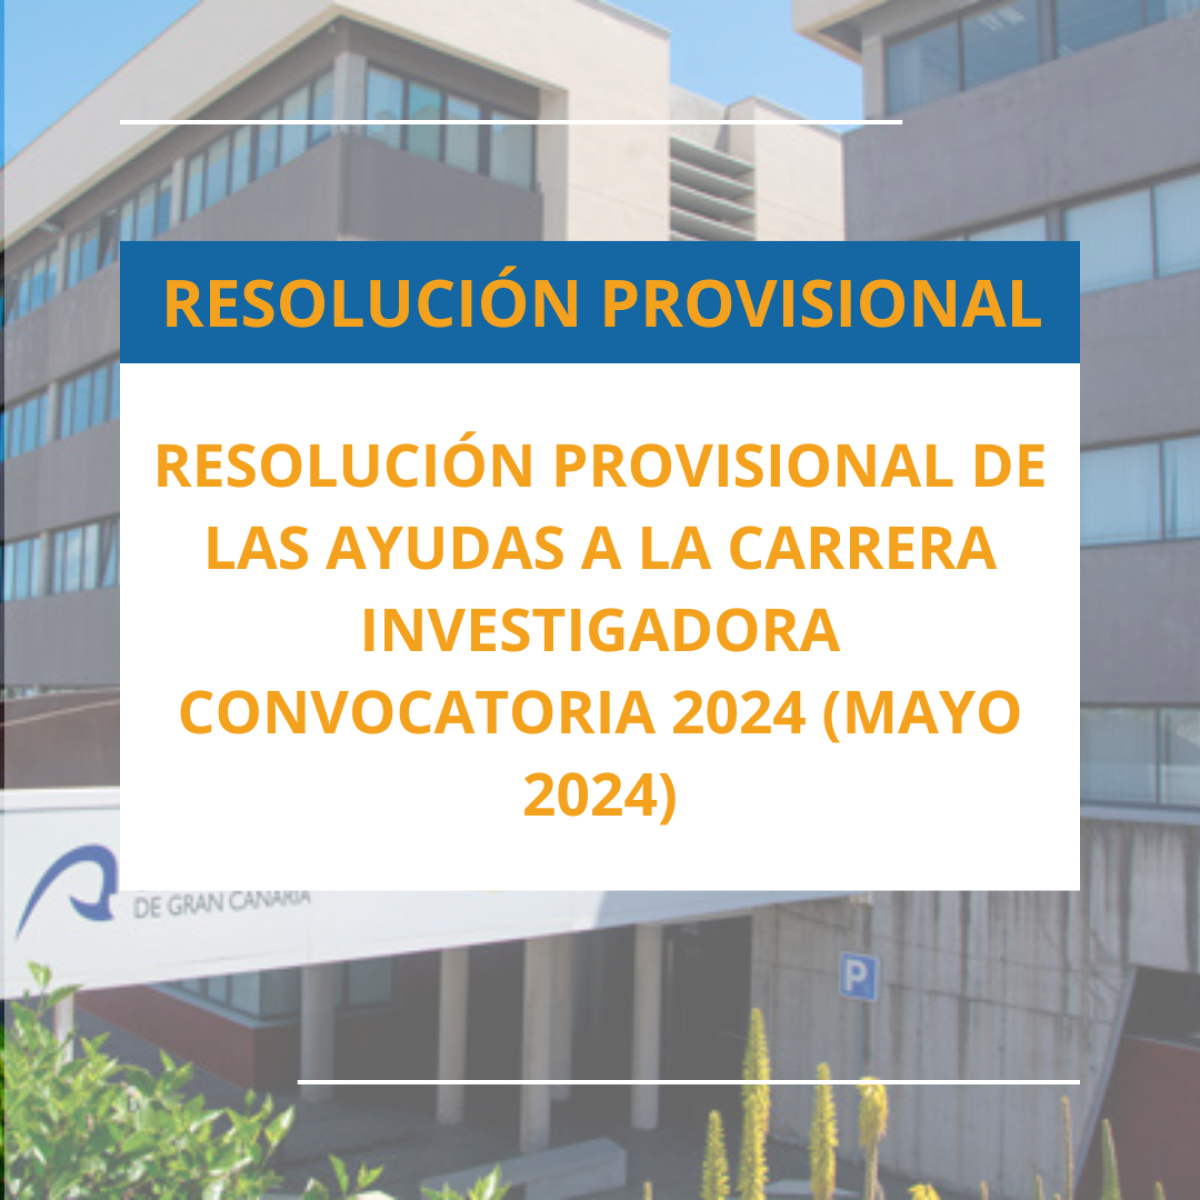 RESOLUCIÓN PROVISIONAL DE LAS AYUDAS A LA CARRERA INVESTIGADORA CONVOCATORIA 2024 (MAYO 2024)